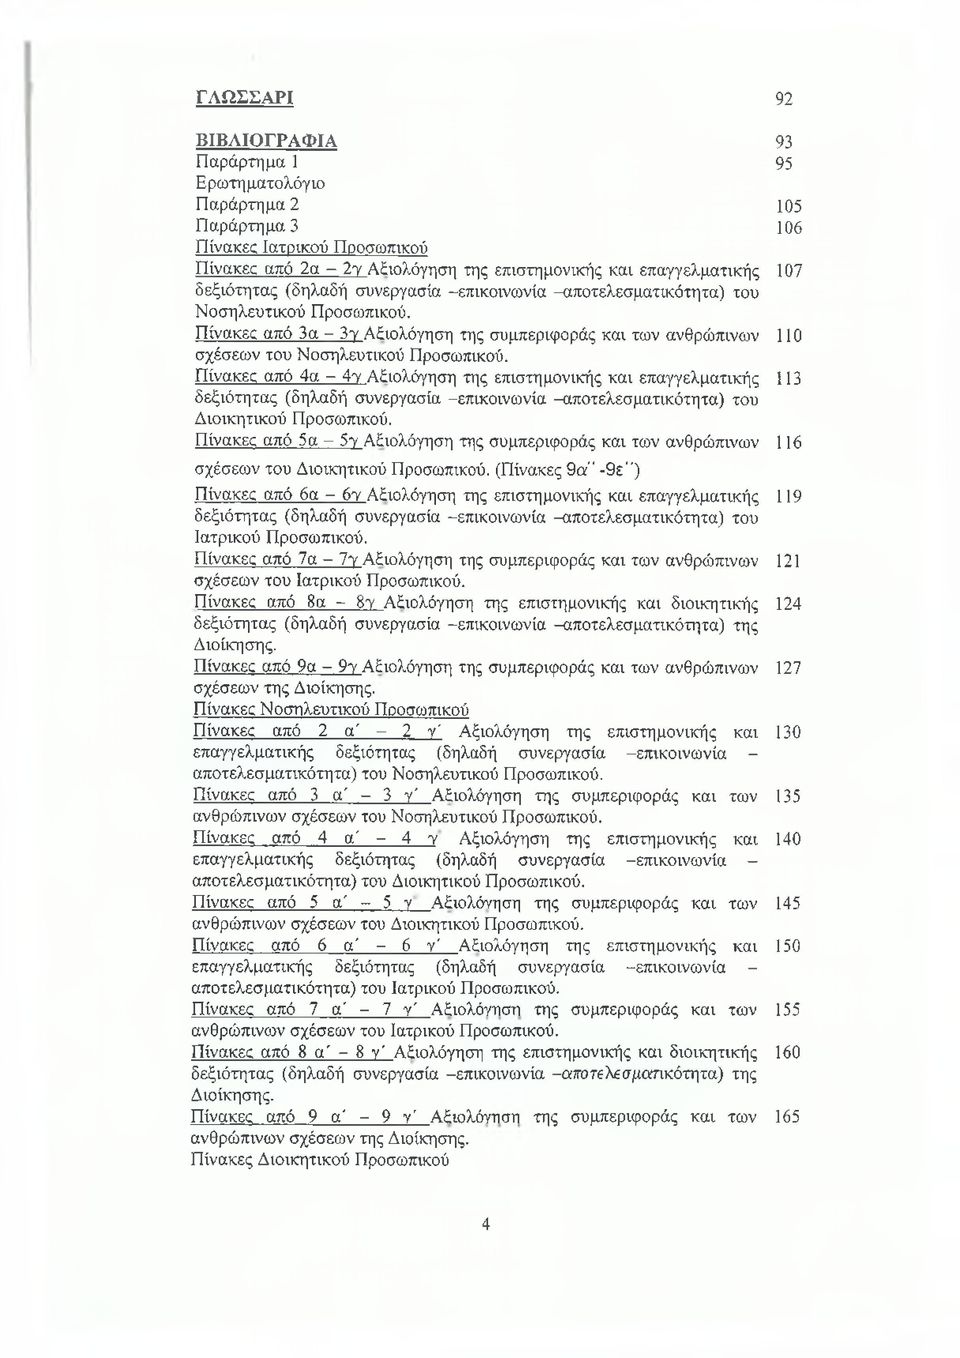 Πίνακες από 4α - 4ύ Αξιολόγηση της επιστημονικής και επαγγελματικής 113 δεξιότητας (δηλαδή συνεργασία -επικοινωνία -αποτελεσματικότητα) του Διοικητικού Προσωπικού.